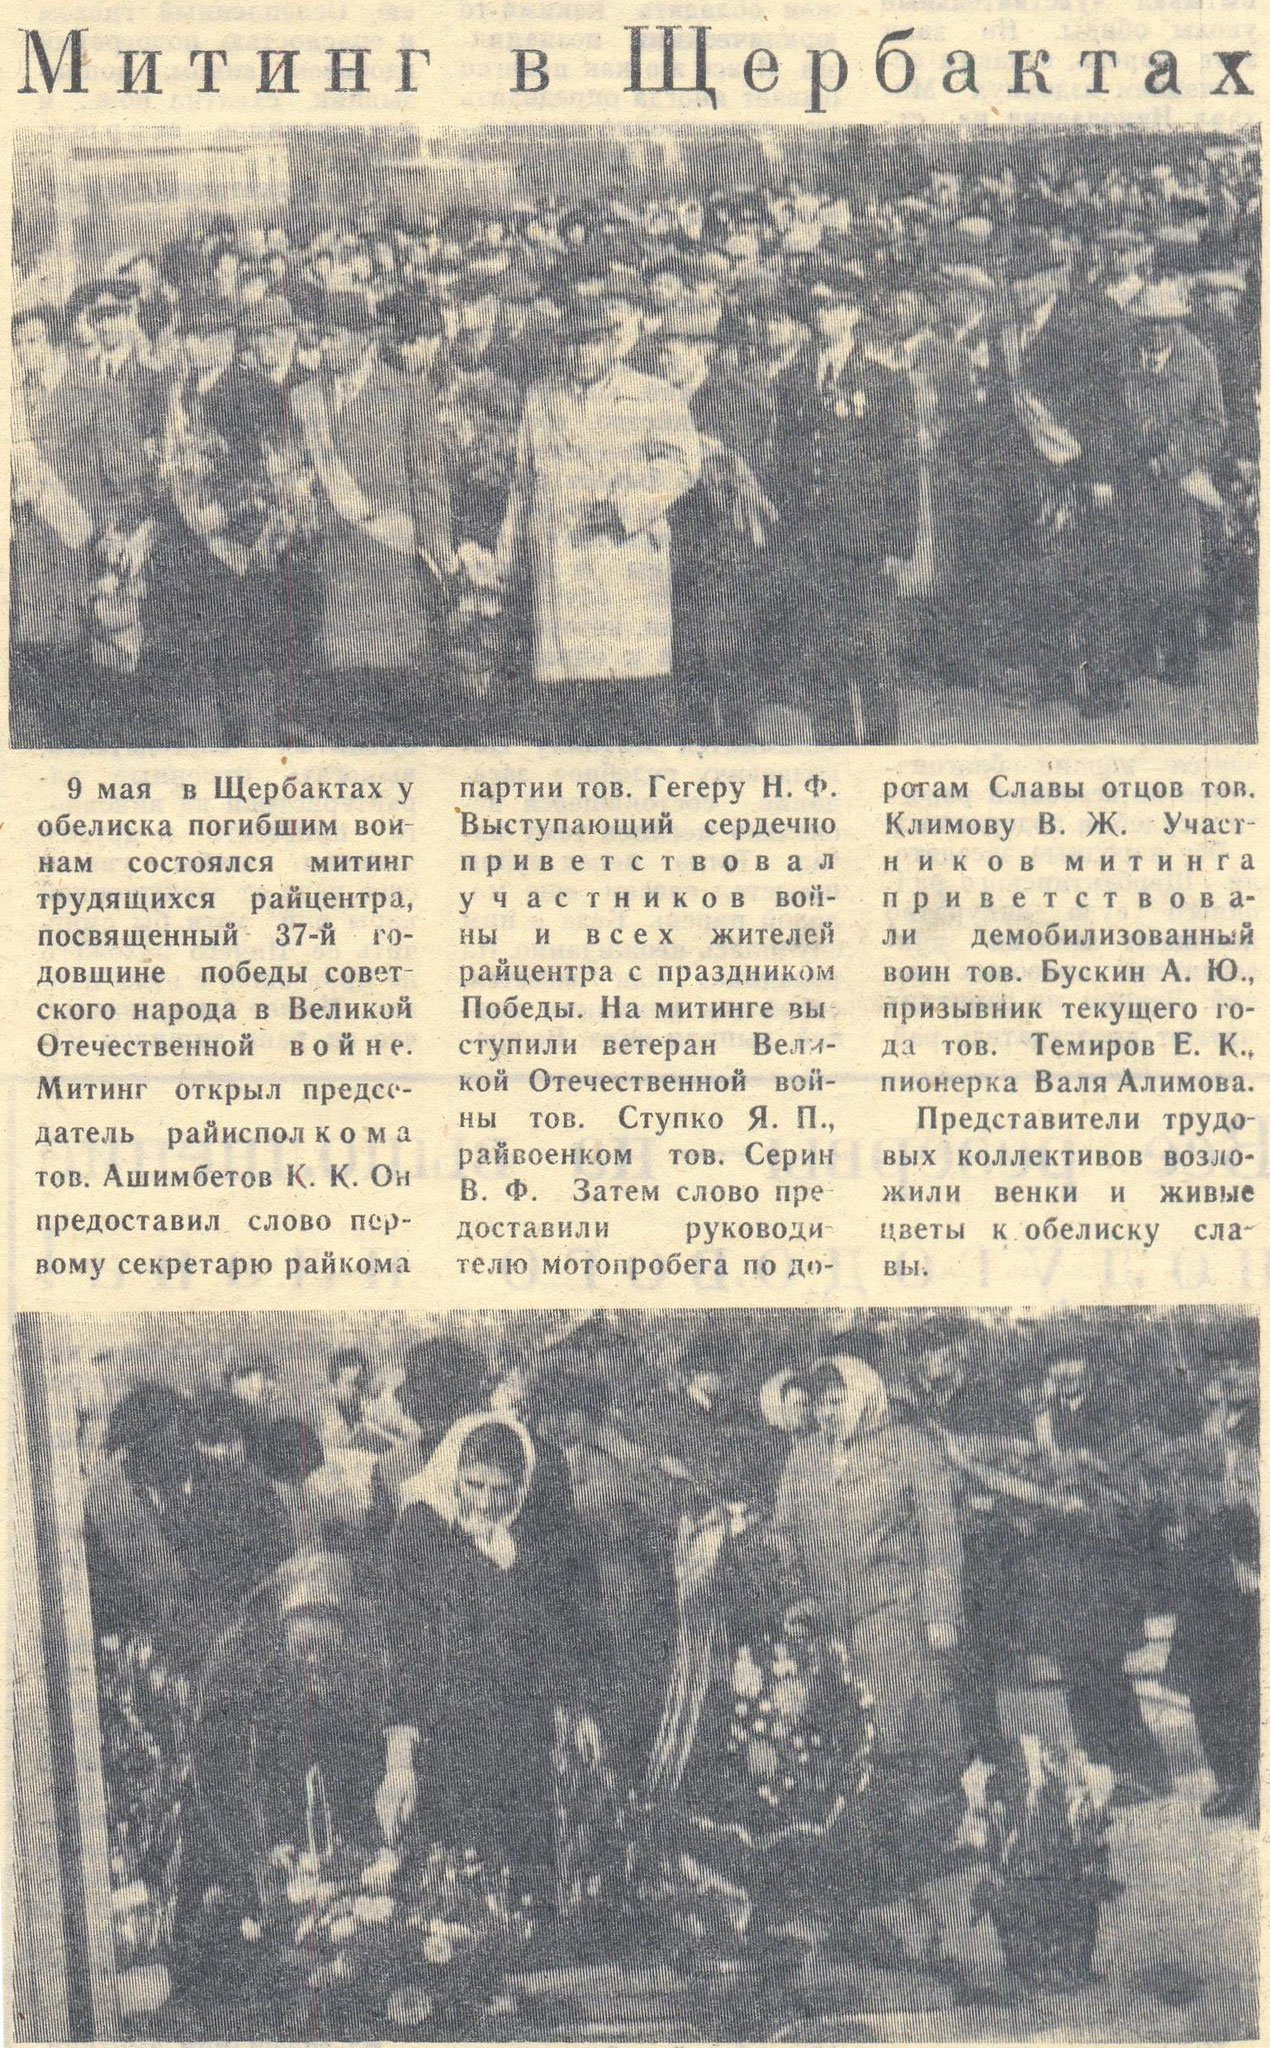 Митинг в Щербактах // Трибуна. - 1982. - 11 мая. - С. 1